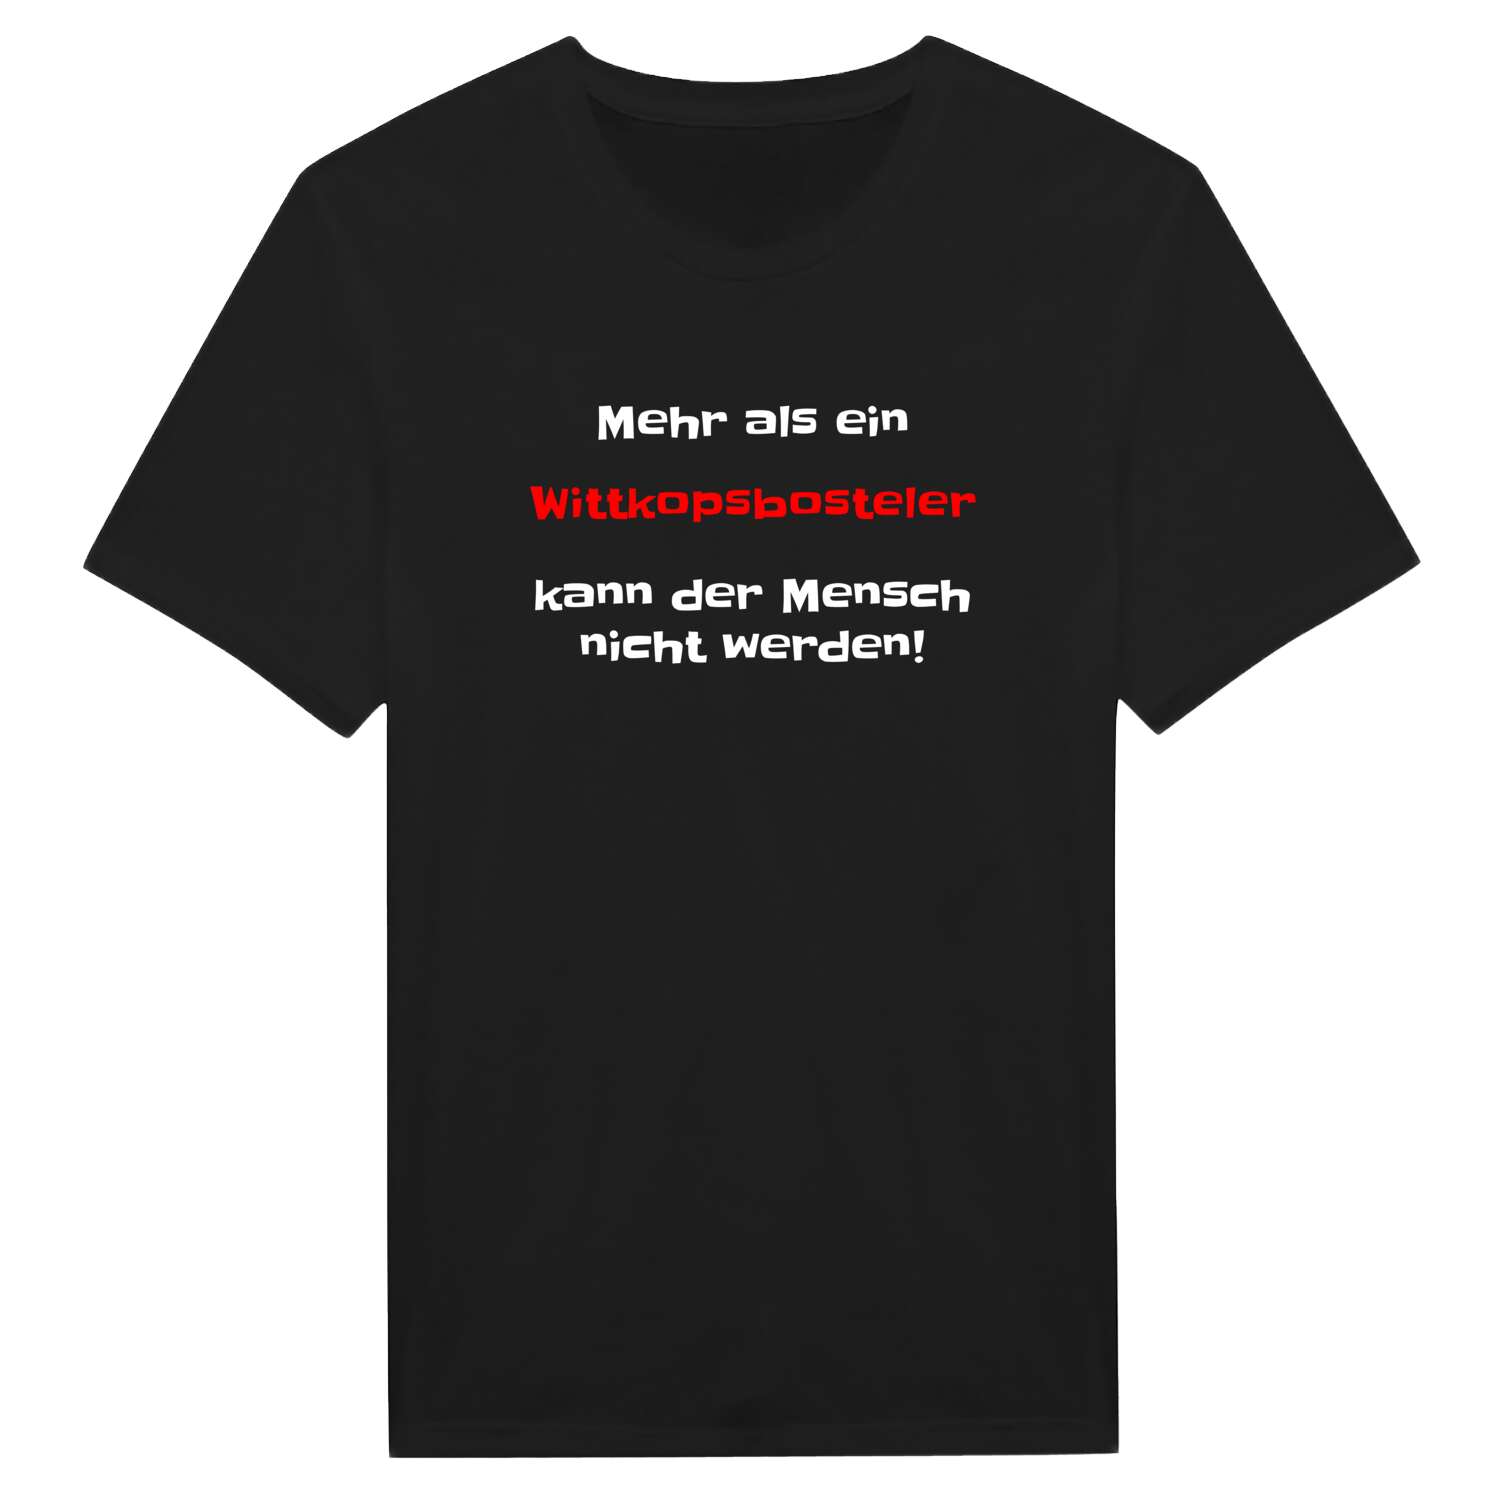 Wittkopsbostel T-Shirt »Mehr als ein«